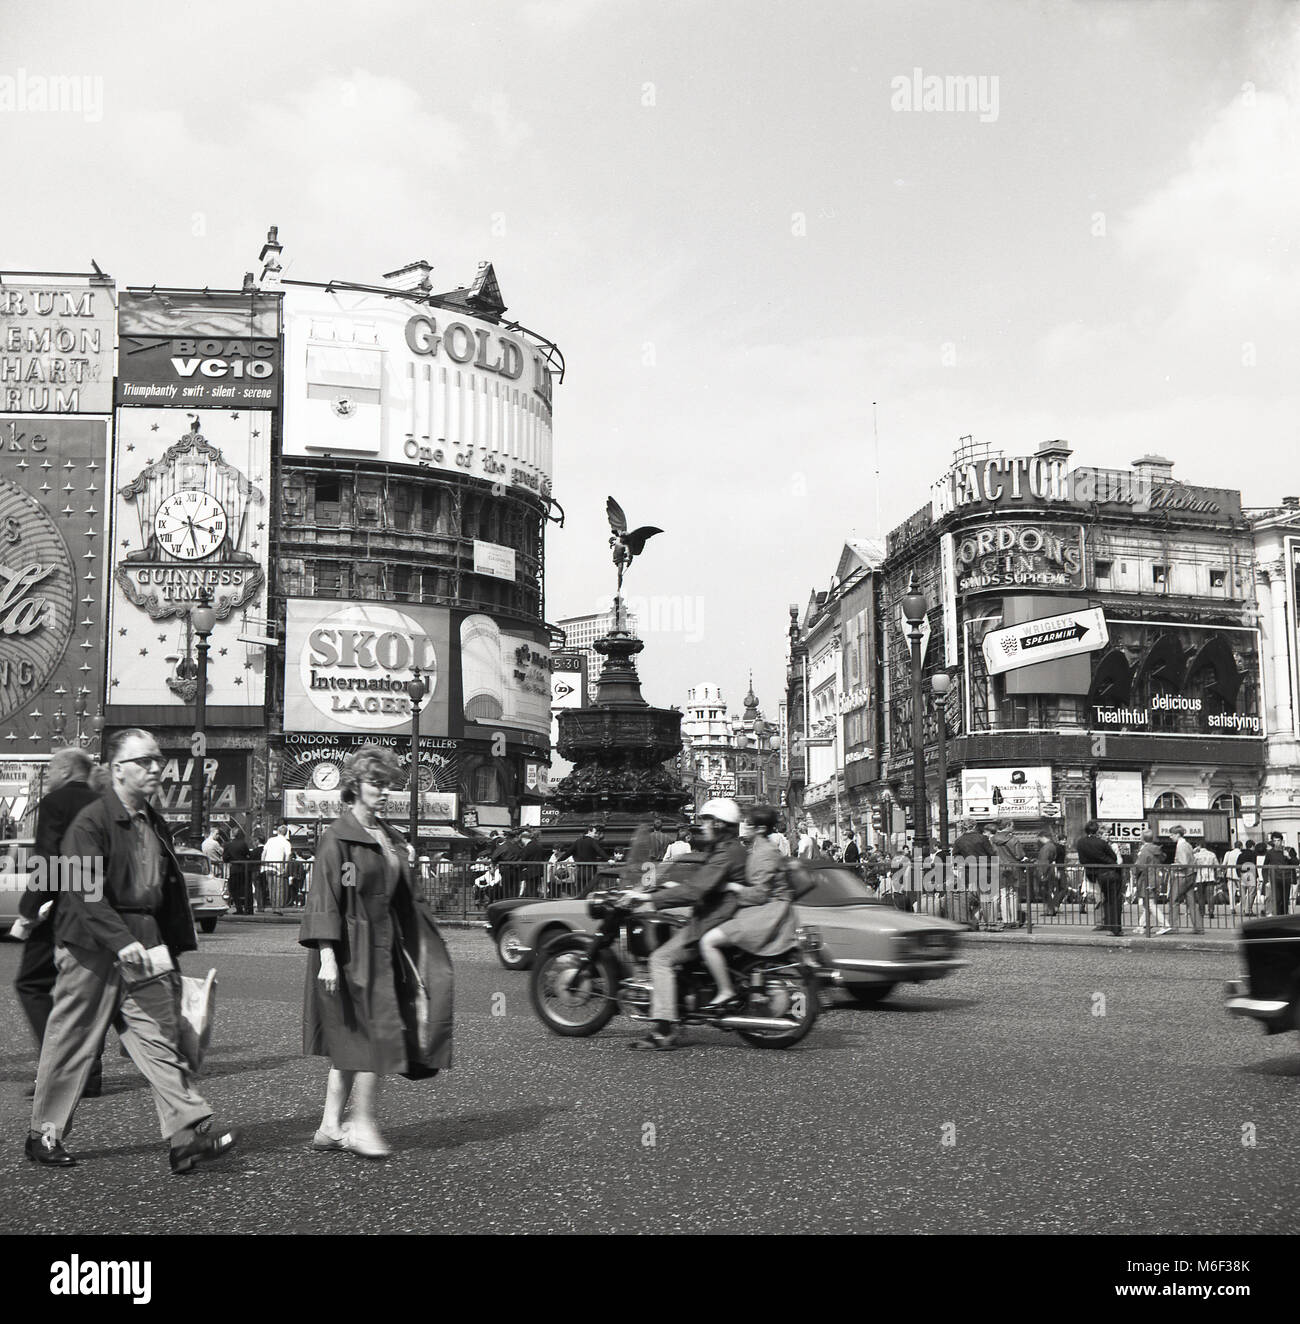 1960, historische Abbildung, die den berühmten Adverising Anschlagtafeln am Kreisverkehr an einer belebten Piccadilly Circus, London, England, mit Motor Verkehr um die shaftsbury Memorial Fountain - häufig, aber fälschlicherweise als Eros bekannt - in der Mitte der Kreuzung. Stockfoto